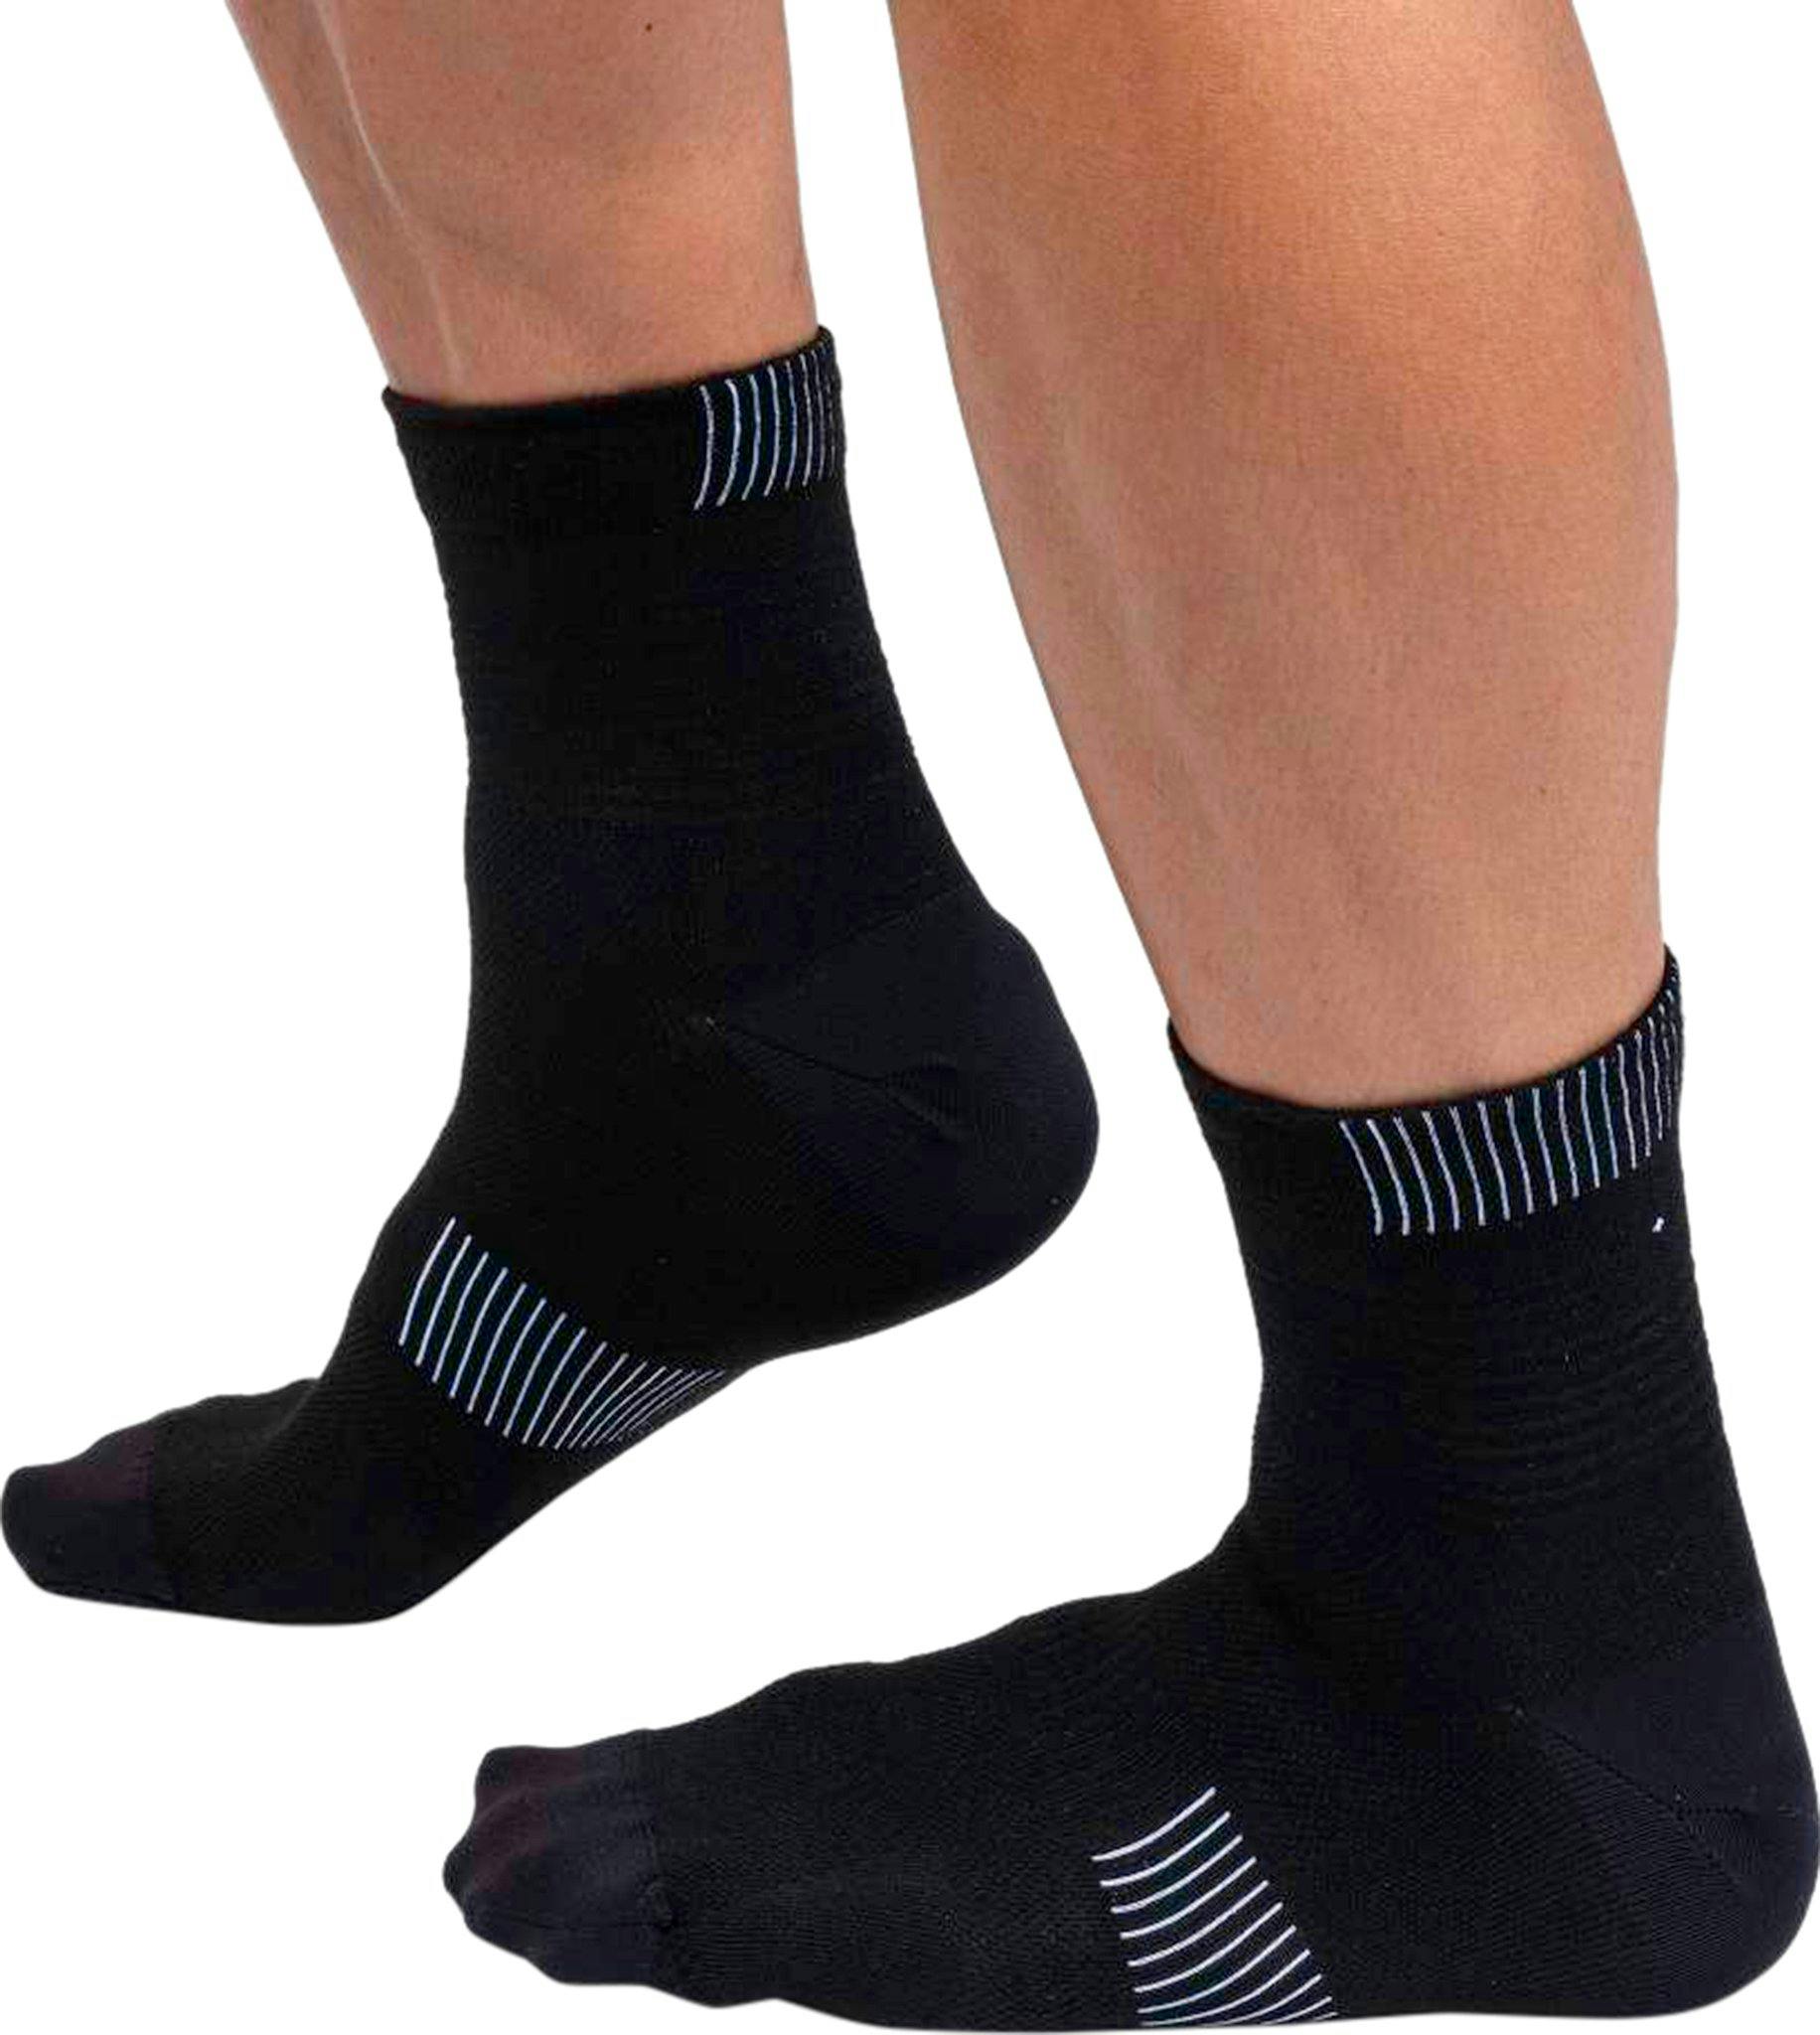 Product image for Ultralight Mid Socks - Men's